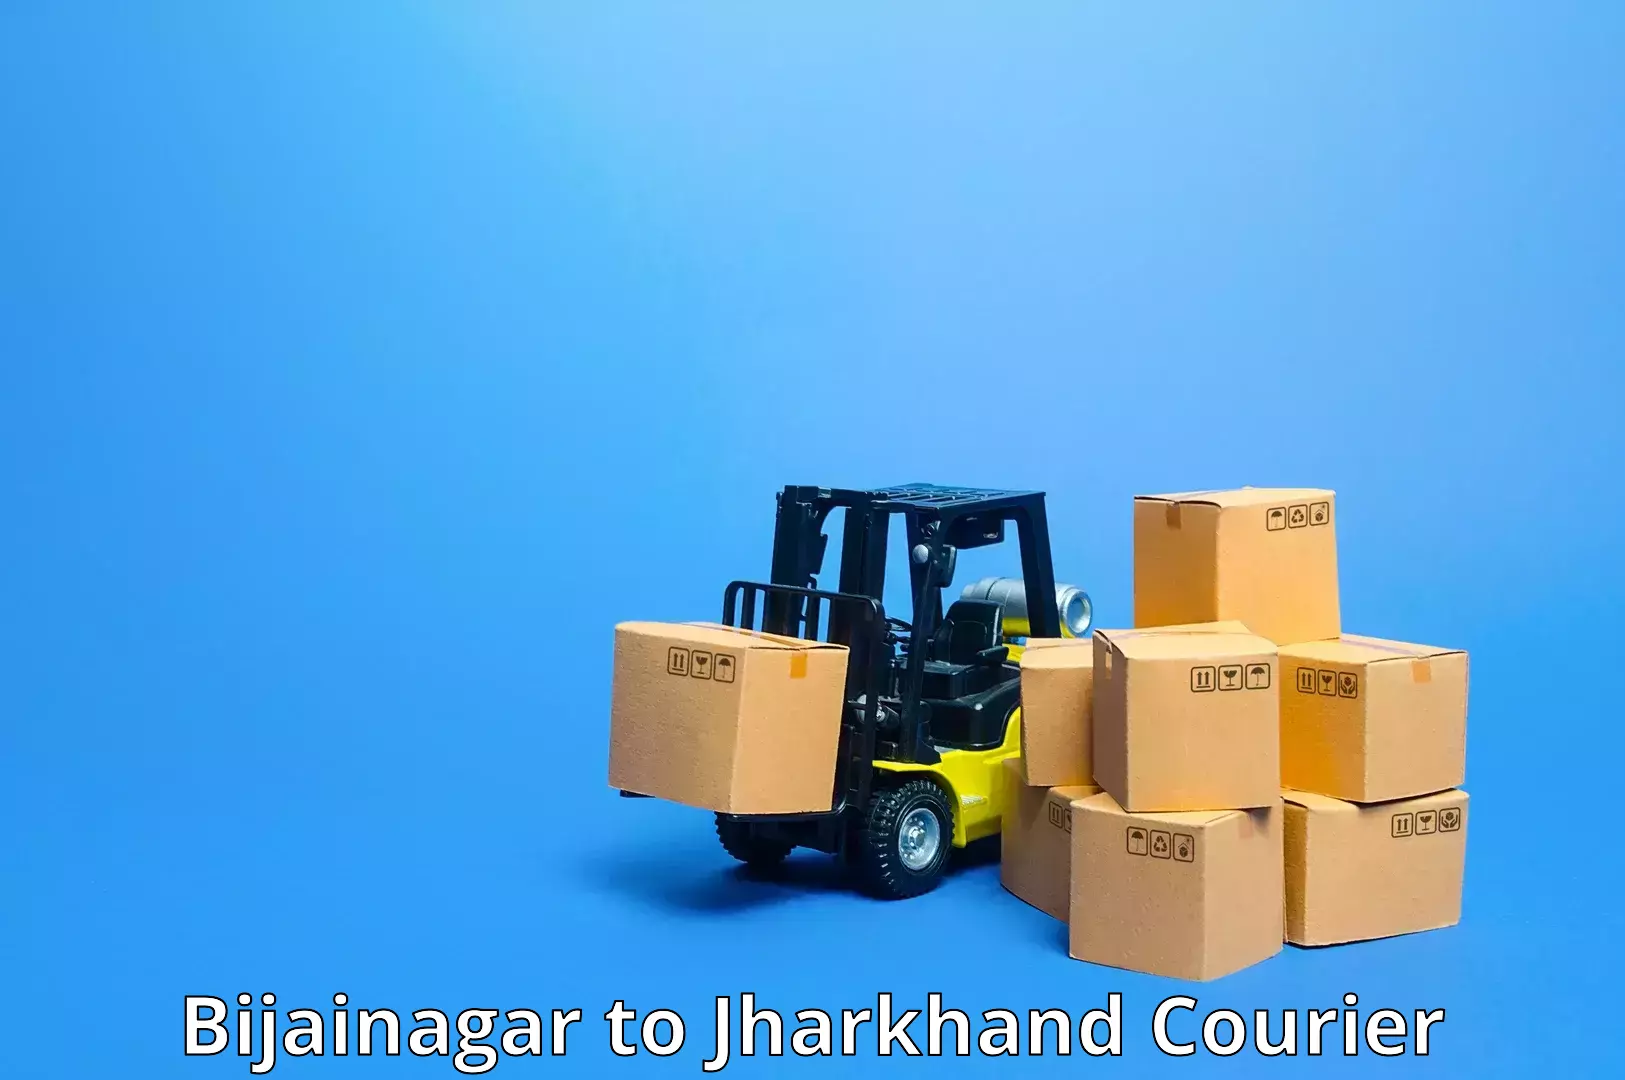 Efficient order fulfillment in Bijainagar to Boarijore